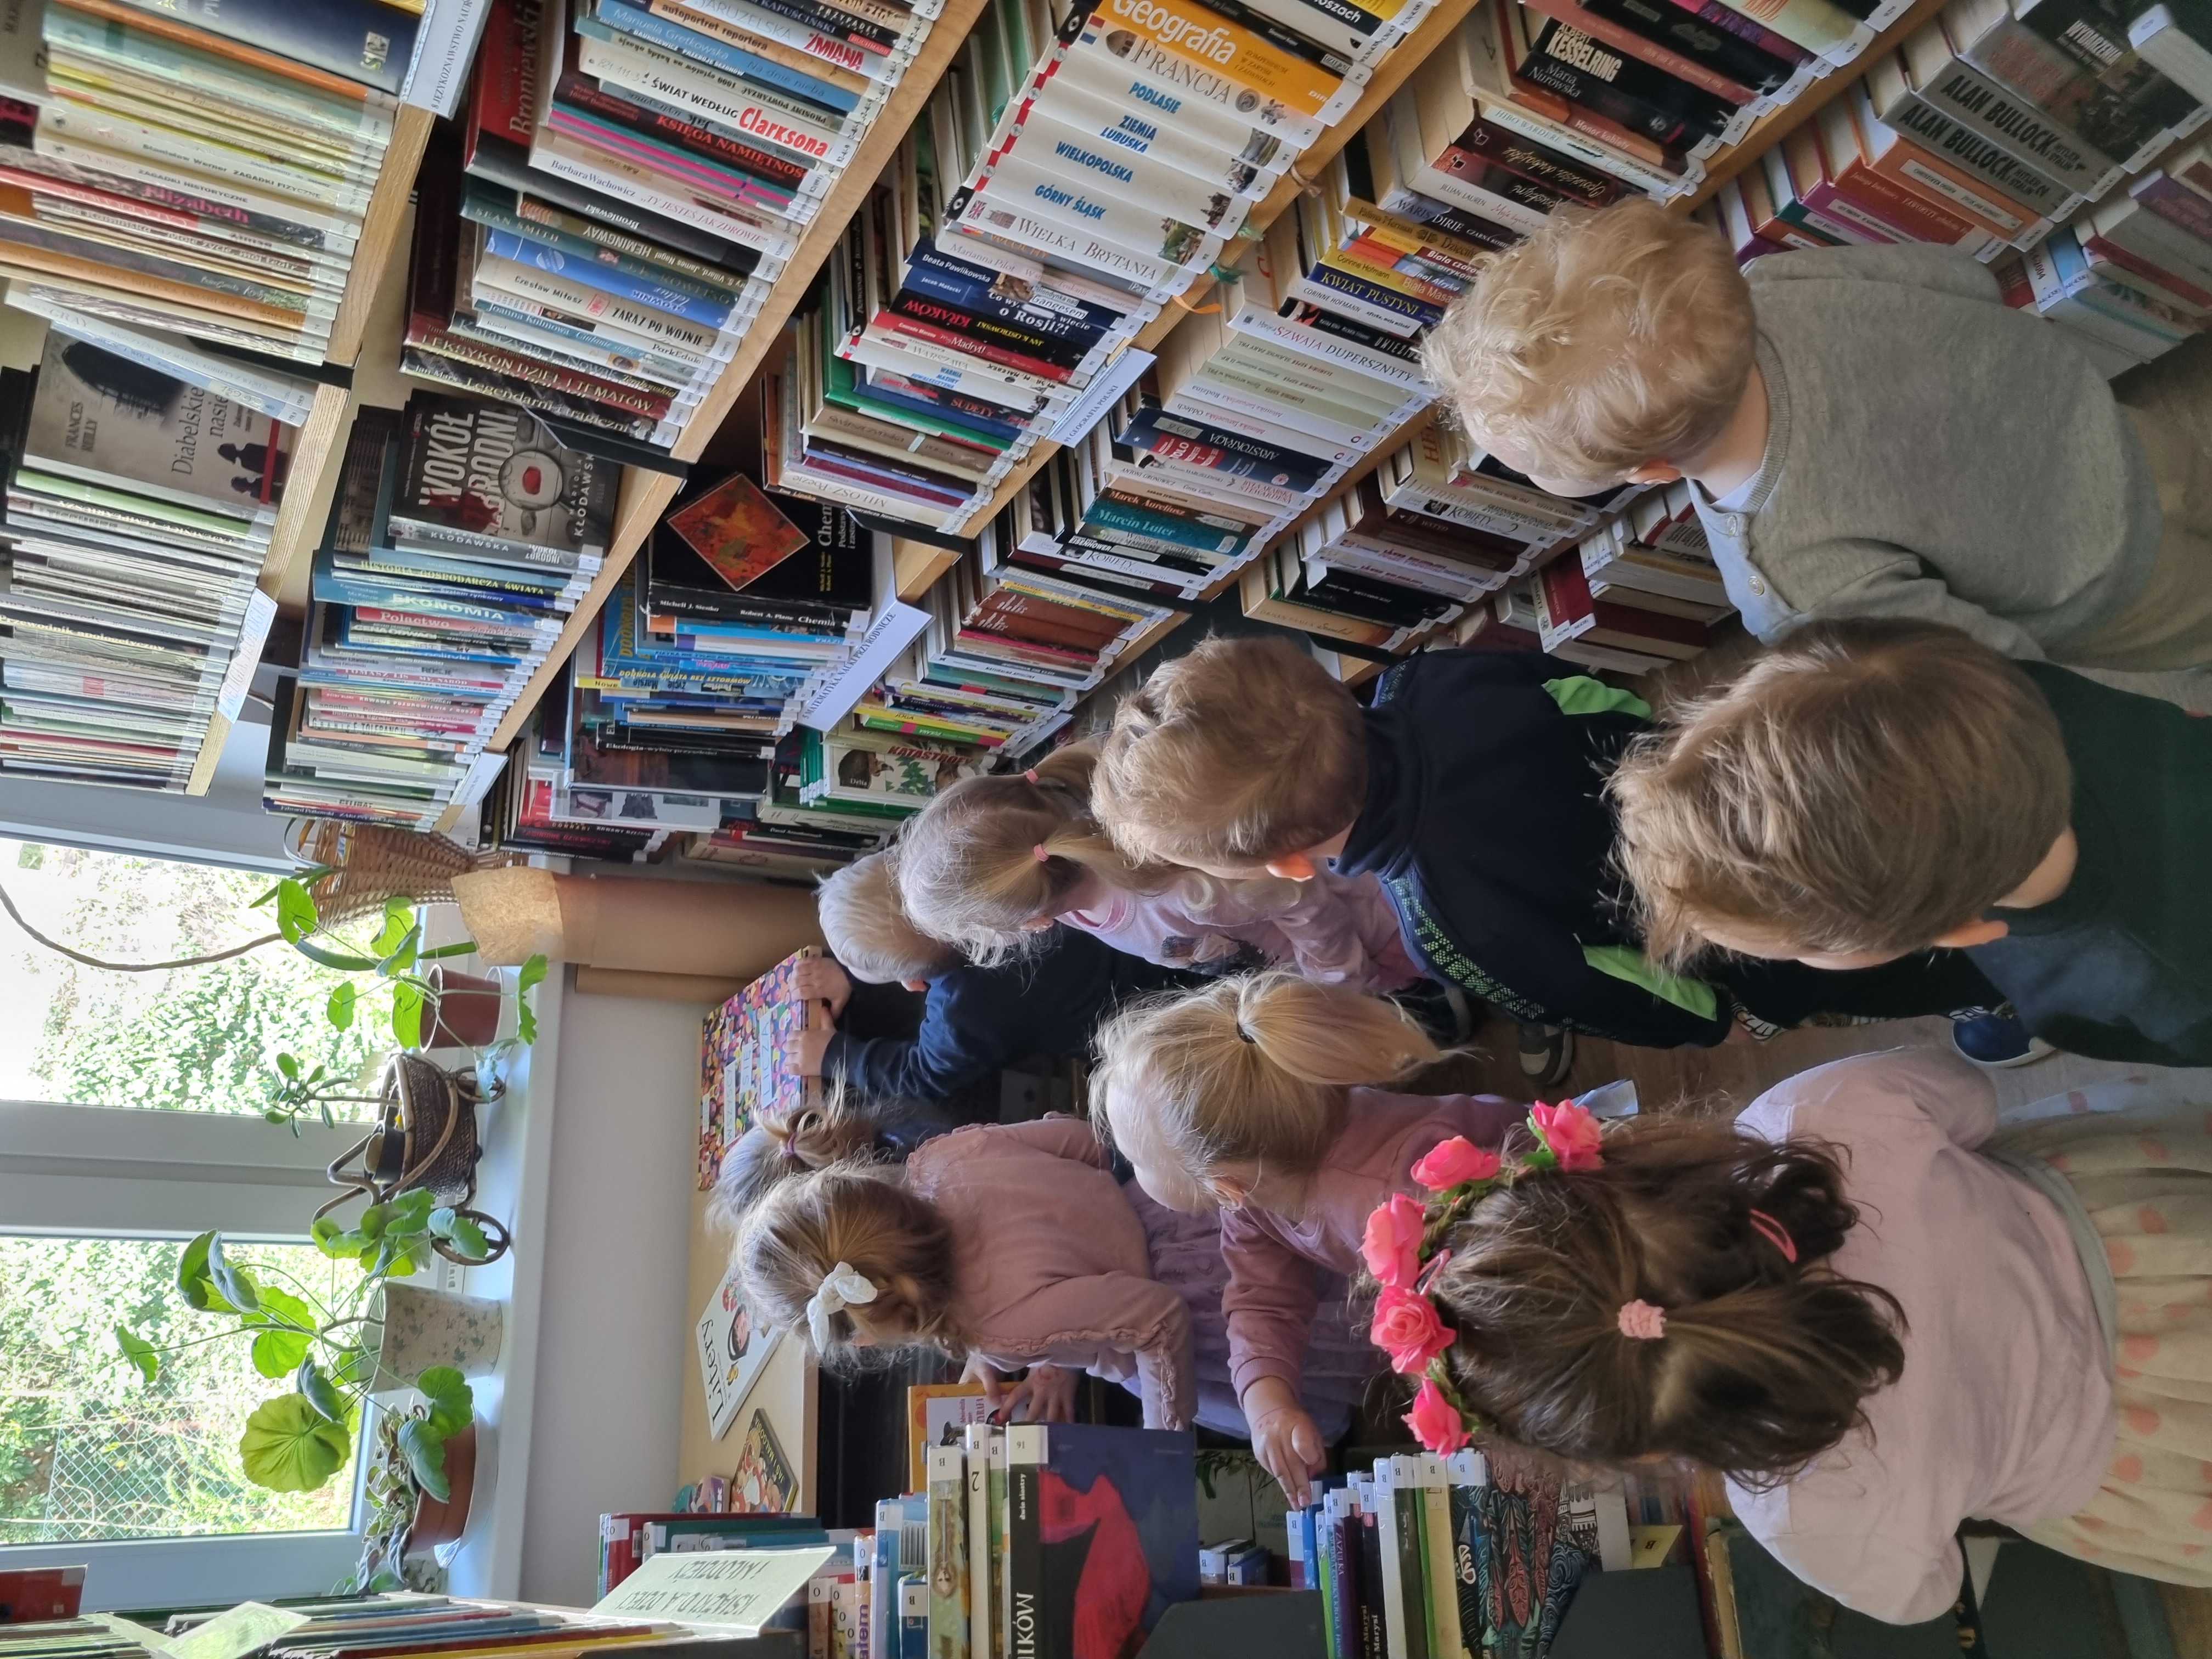 Grupa dzieci w wieku przedszkolnym przygląda się książkom w bibliotece, stojąc obok regału.